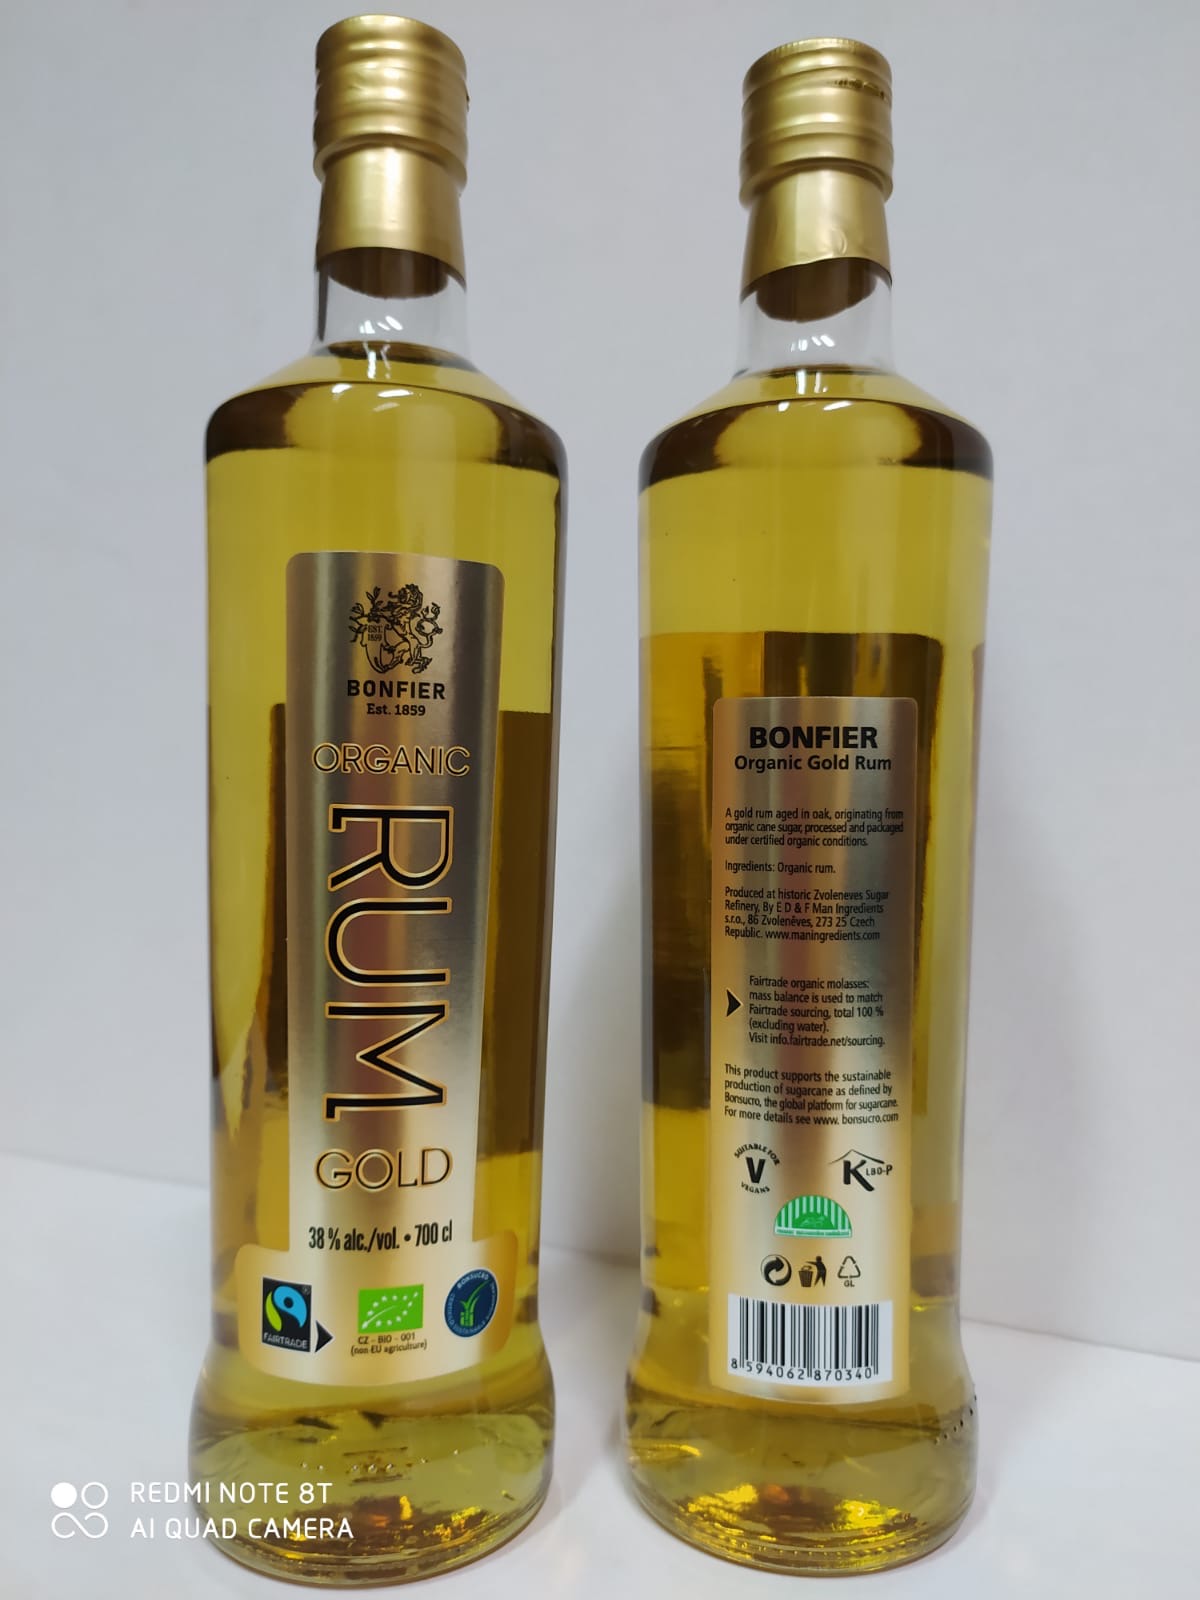 Bonfier Organic Gold Rum